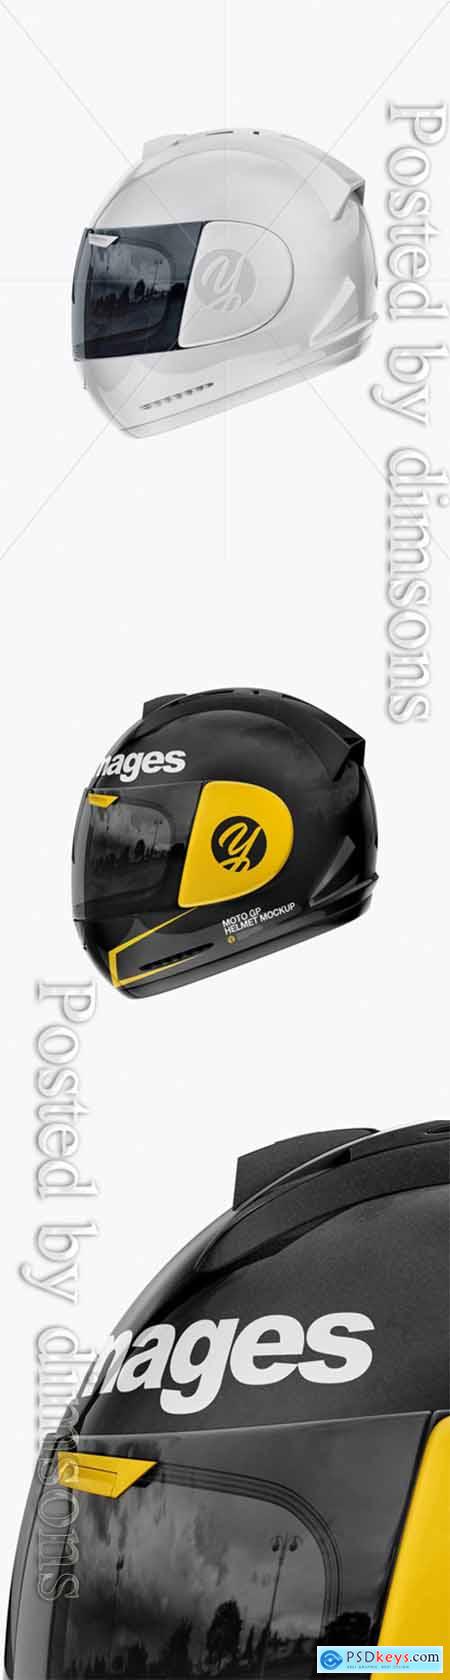 Moto GP Helmet Mockup - Side View